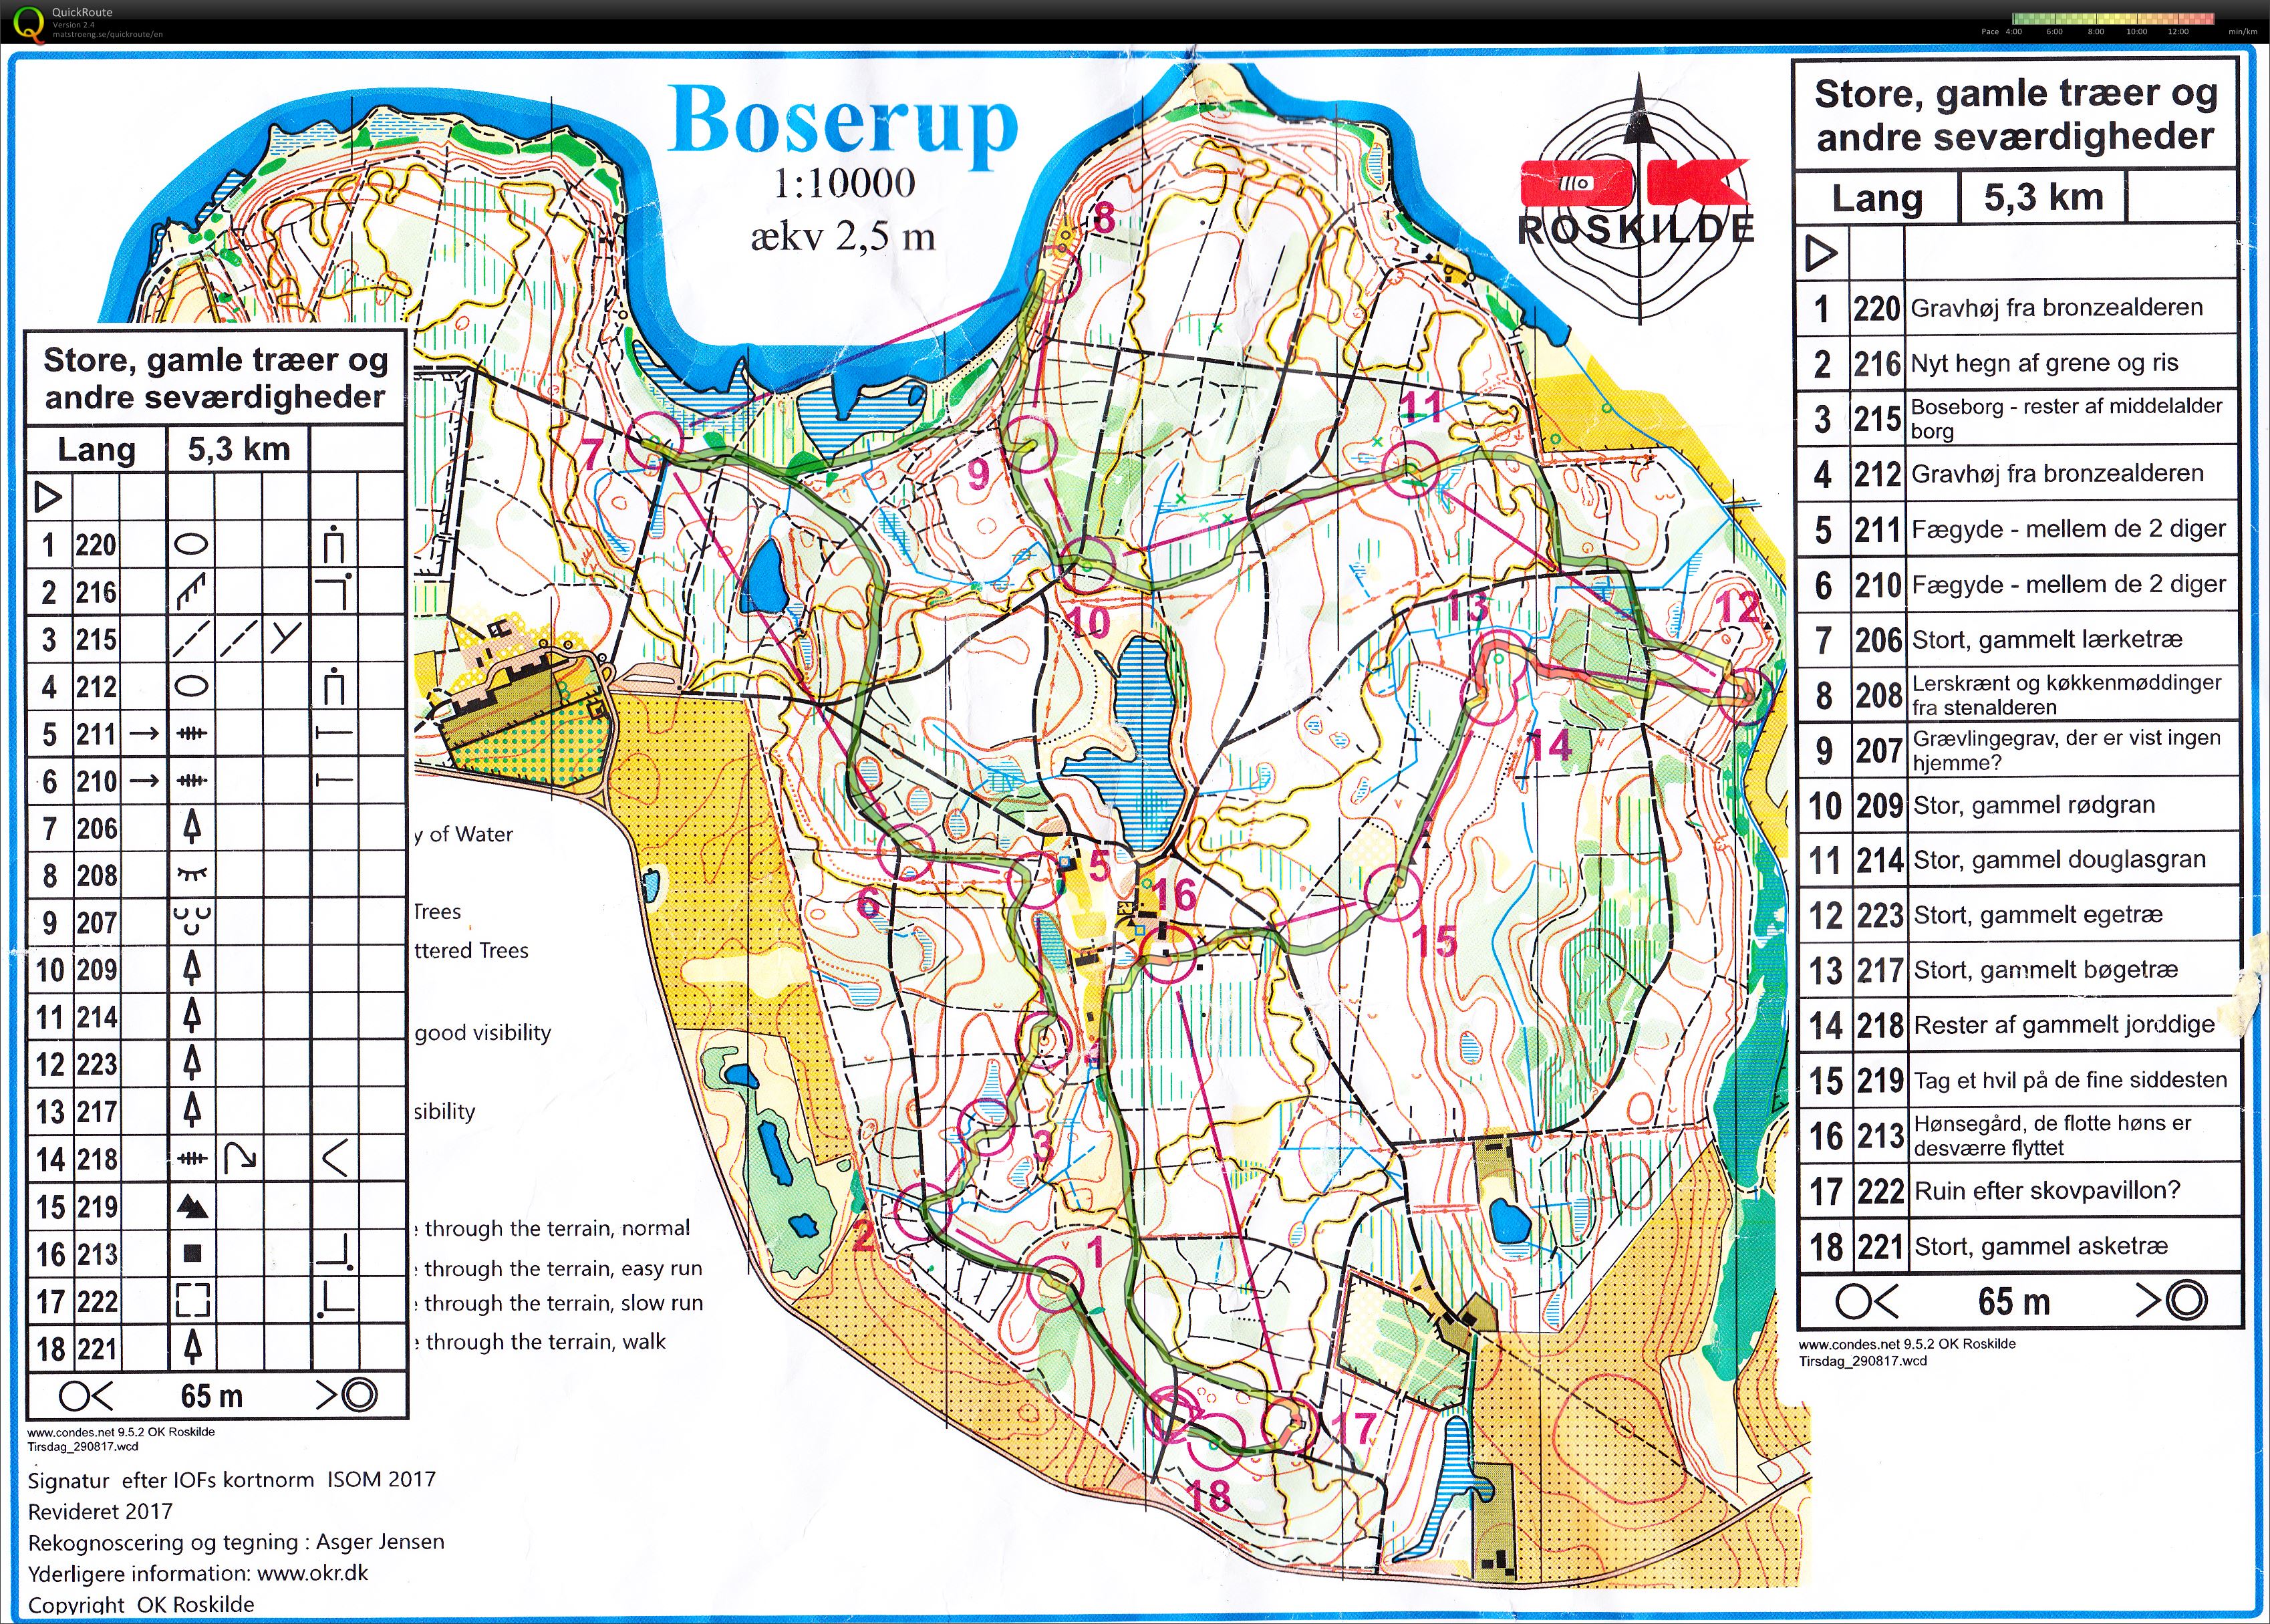 Tirsdagstræning - Boserup seværdighedsløb (29-08-2017)